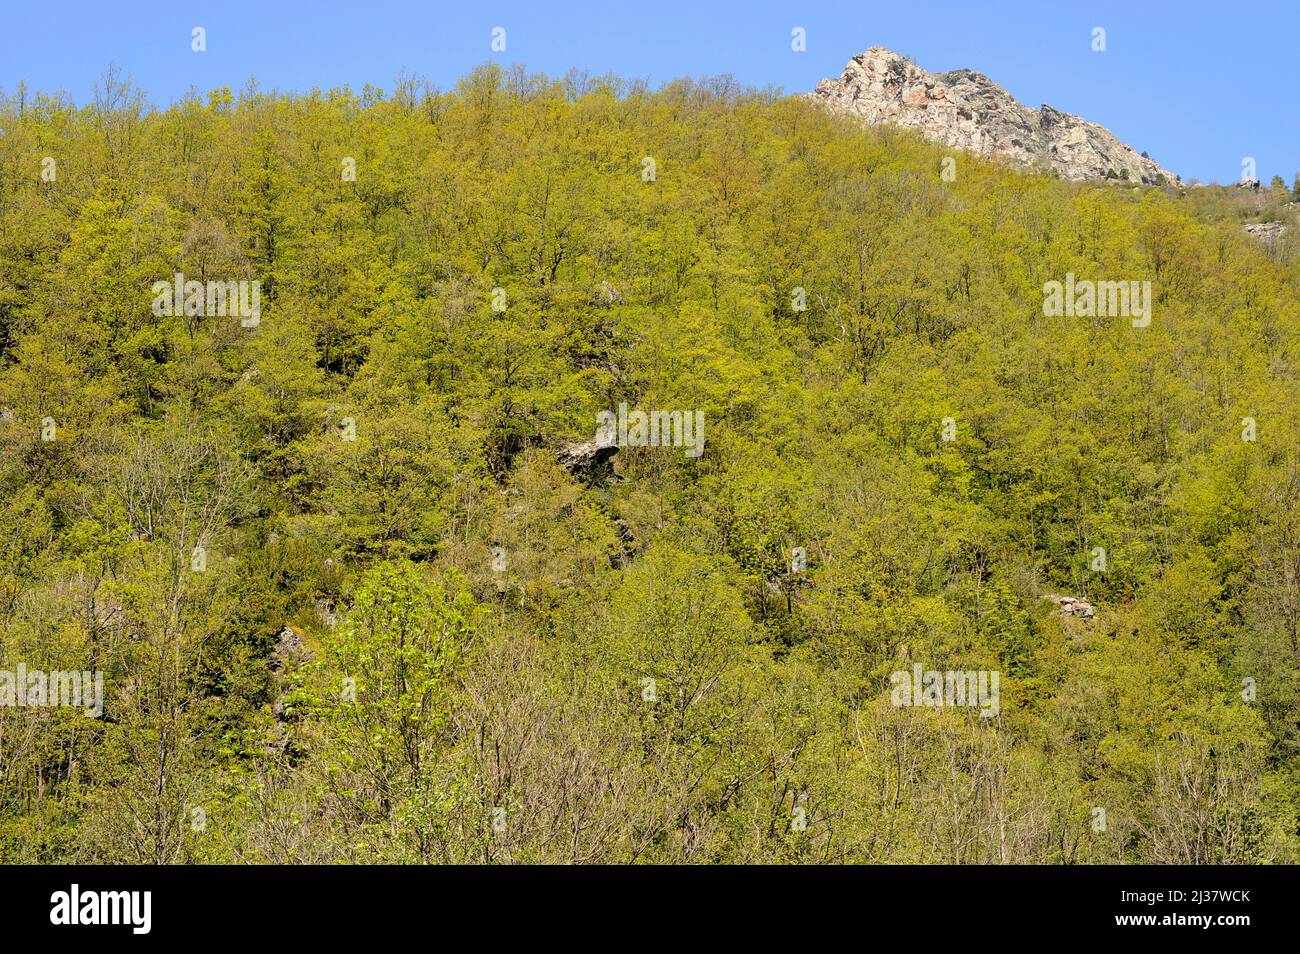 El roble pubescente (Quercus humilis o Quercus pubescens) es un árbol caducifolio nativo del centro y sur de Europa y Asia Menor. Esto Foto de stock